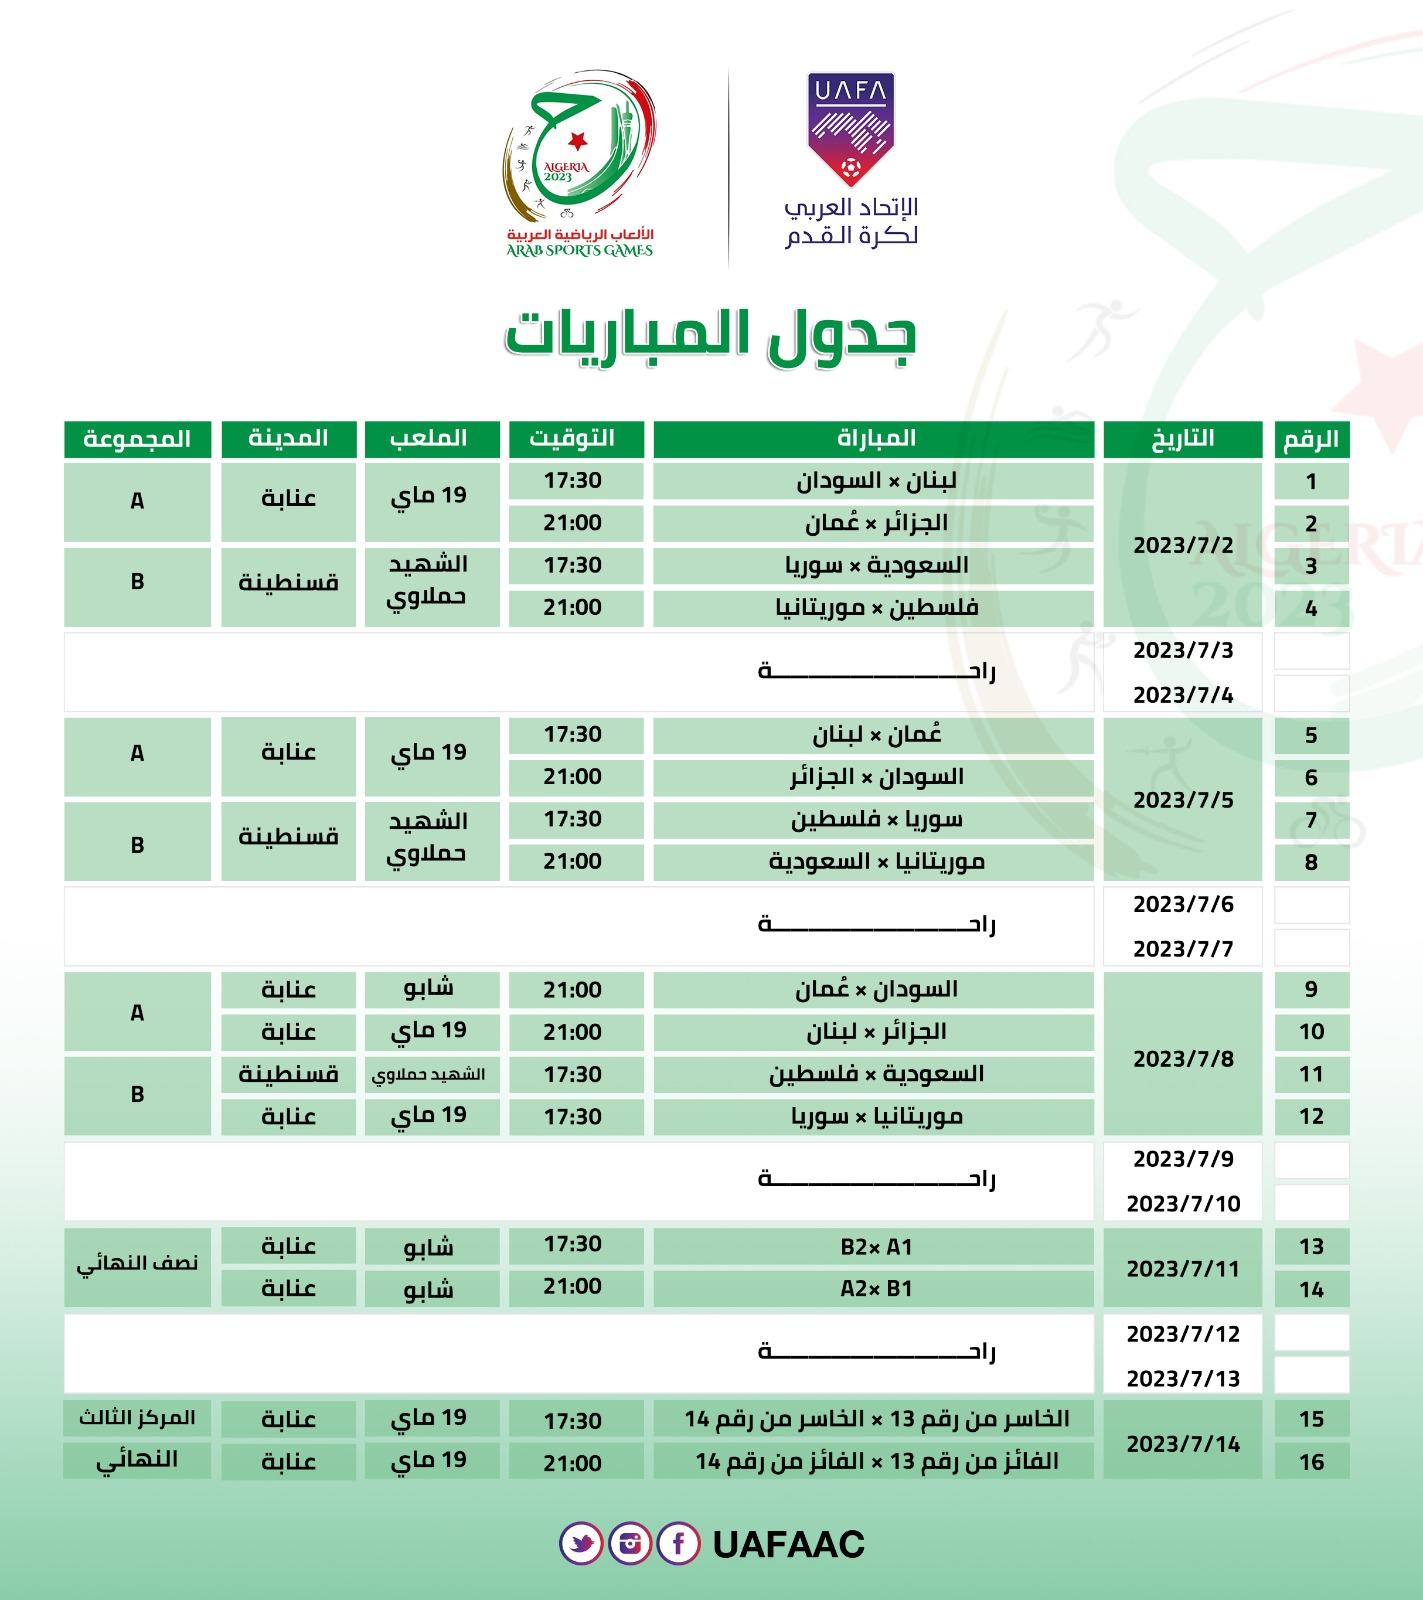 جدول مباريات المنتخبات في بطولة الالعاب العربية 2023 التي تحتضنها الجزائر